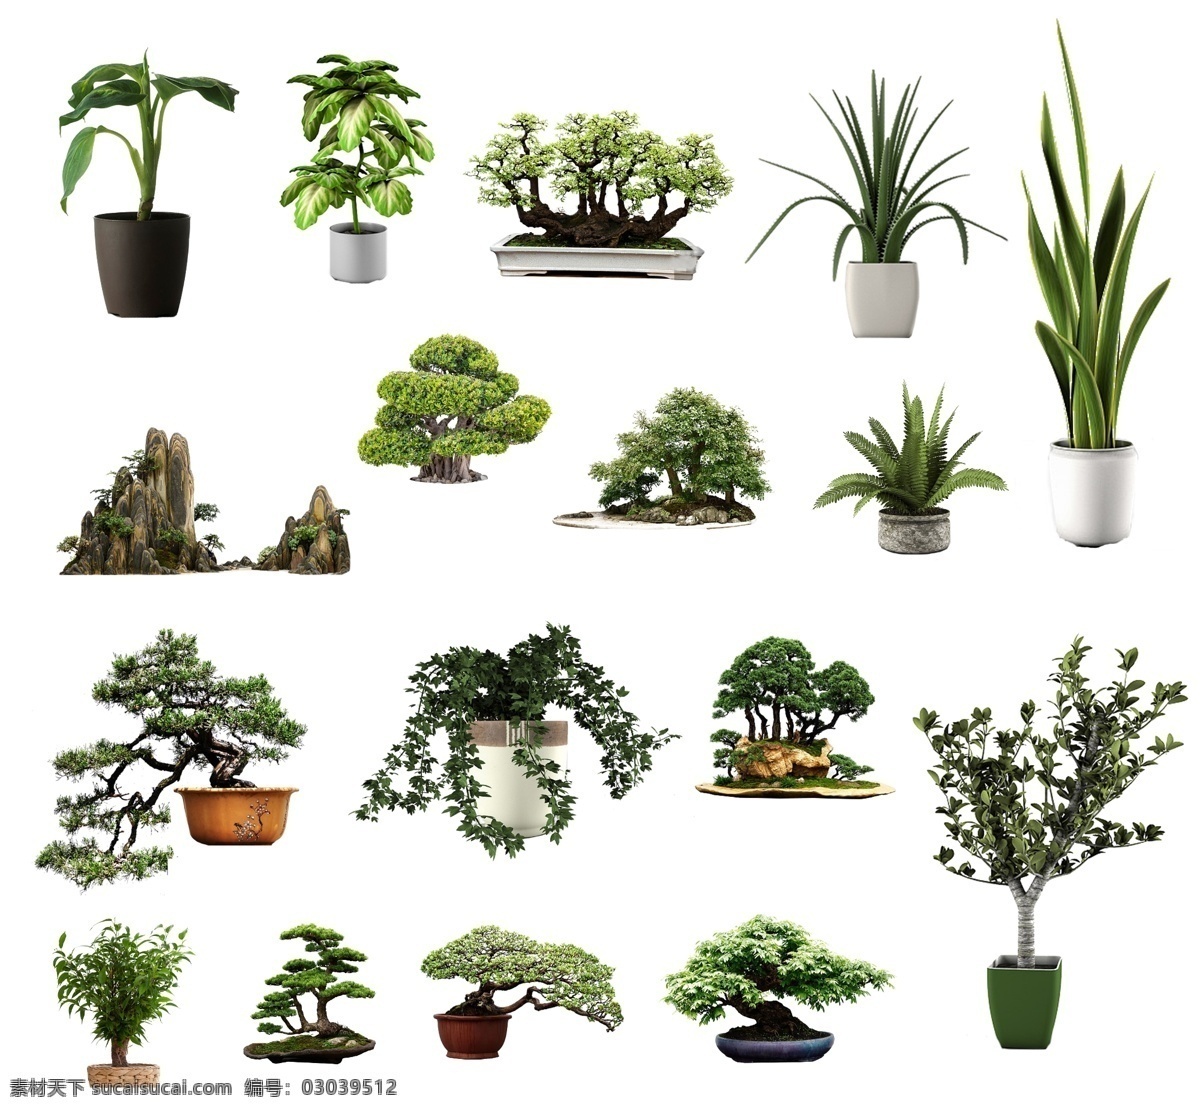 免 抠 植物 图 室内 盆栽 绿色植物 盆景 中式盆景 植物免抠图 环境设计 室内设计